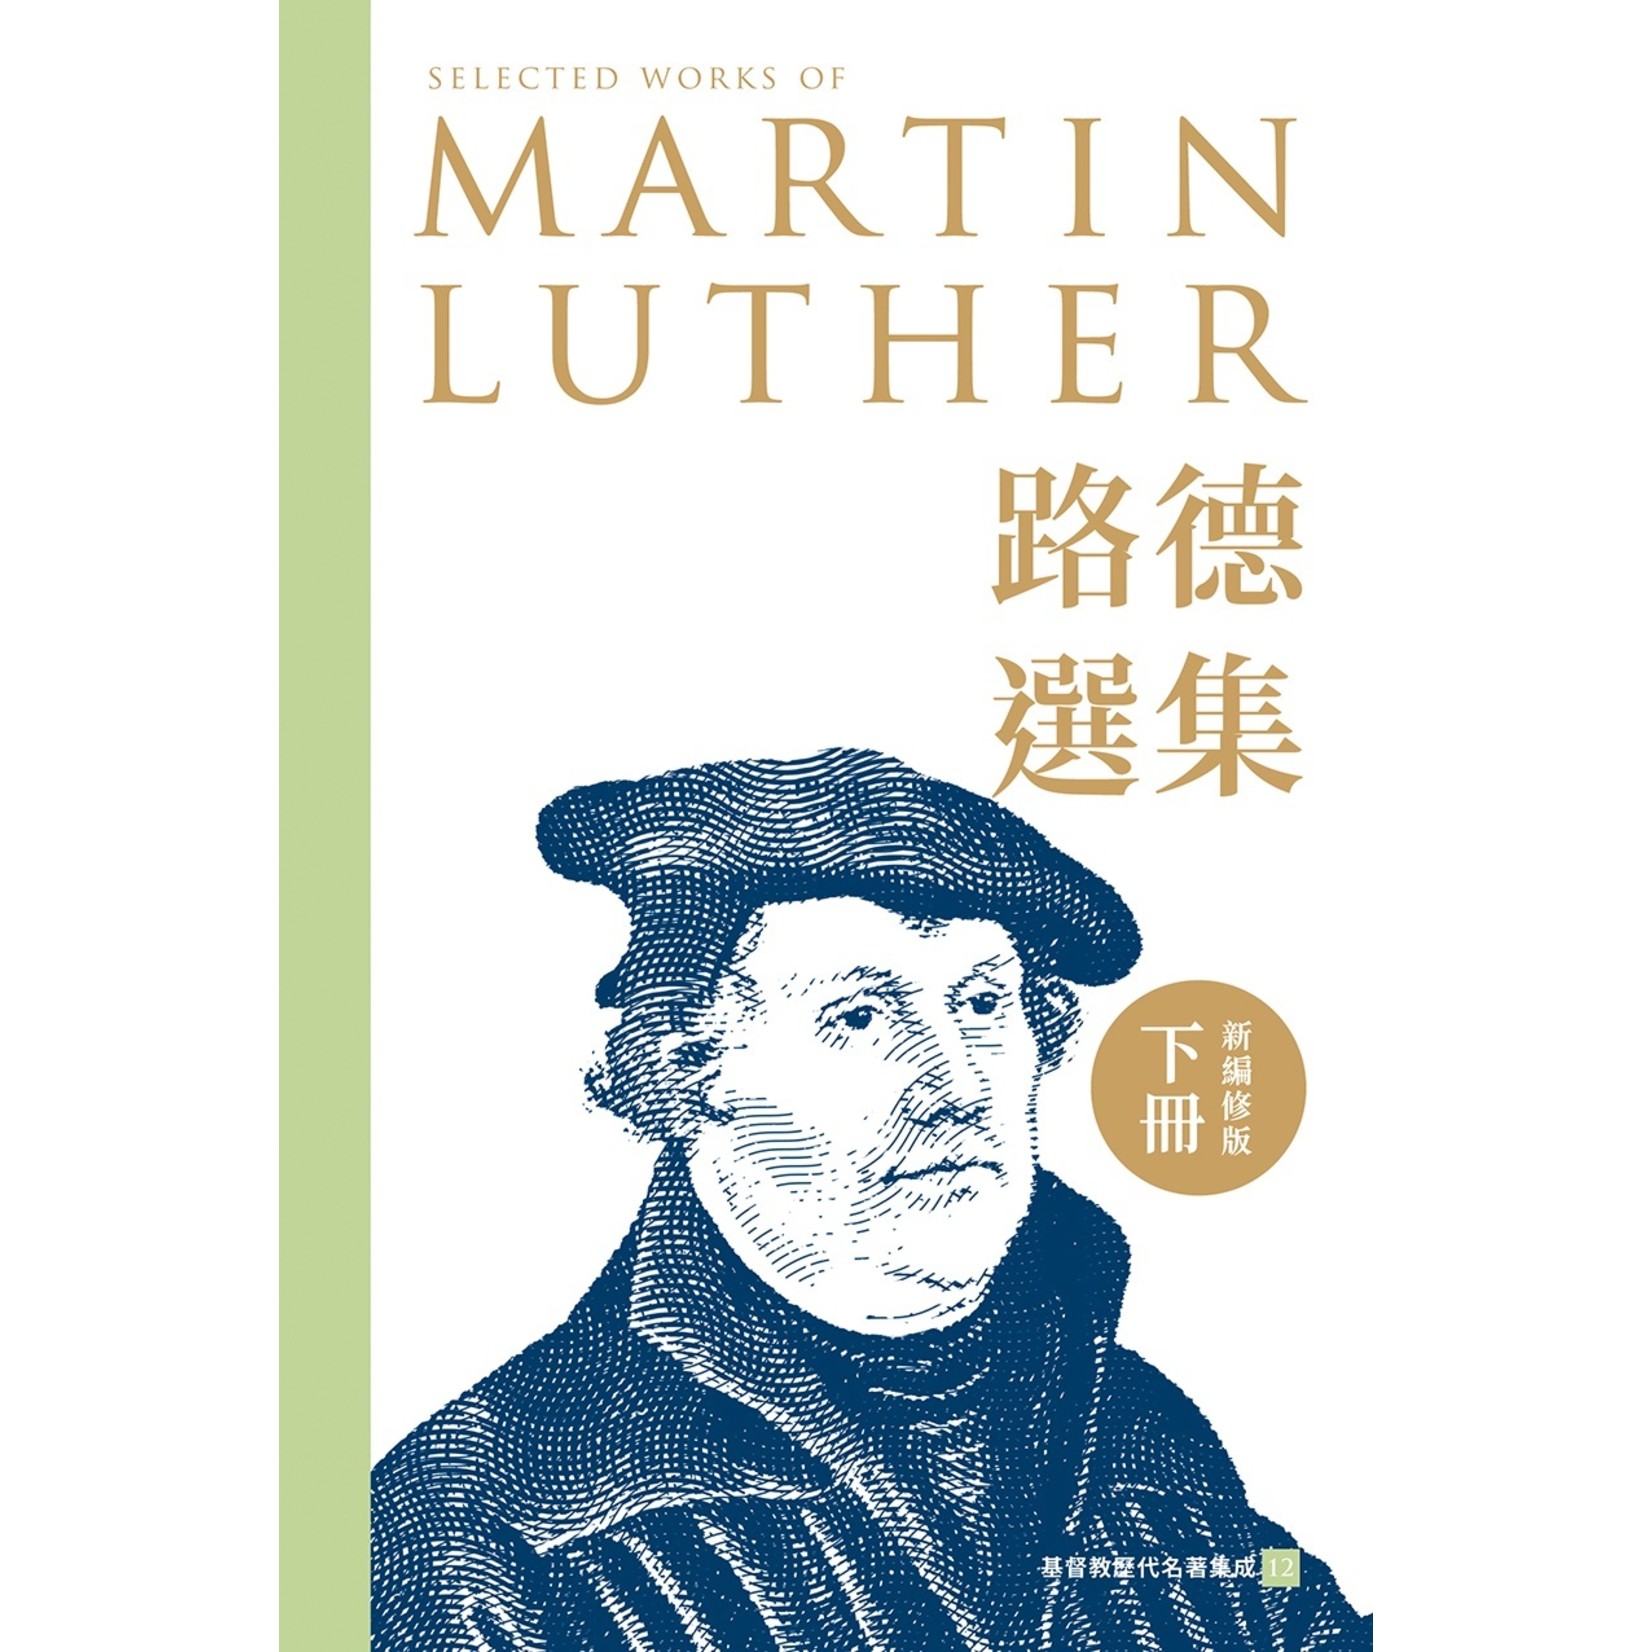 基督教文藝(香港) Chinese Christian Literature Council 路德選集（下冊）新編修版 Selected works of Martin Luther (Volume Two): New and Revised Edition